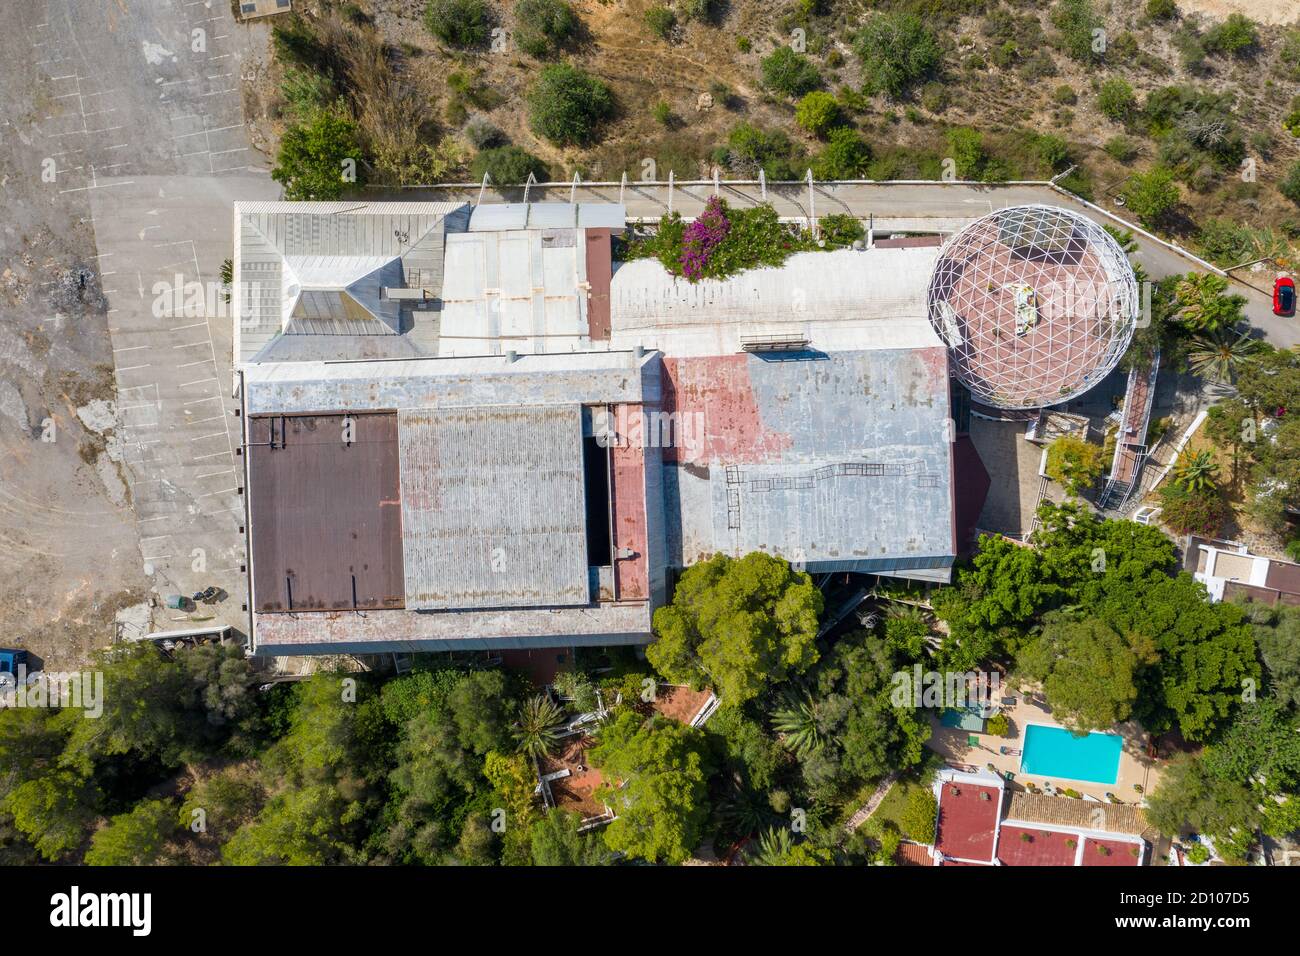 La imagen del 31 de julio de 2020 muestra el club nocturno más grande del mundo, Privilege en Ibiza, mirando desbocado ya que está cerrado para el verano debido a Coronavirus. Foto de stock